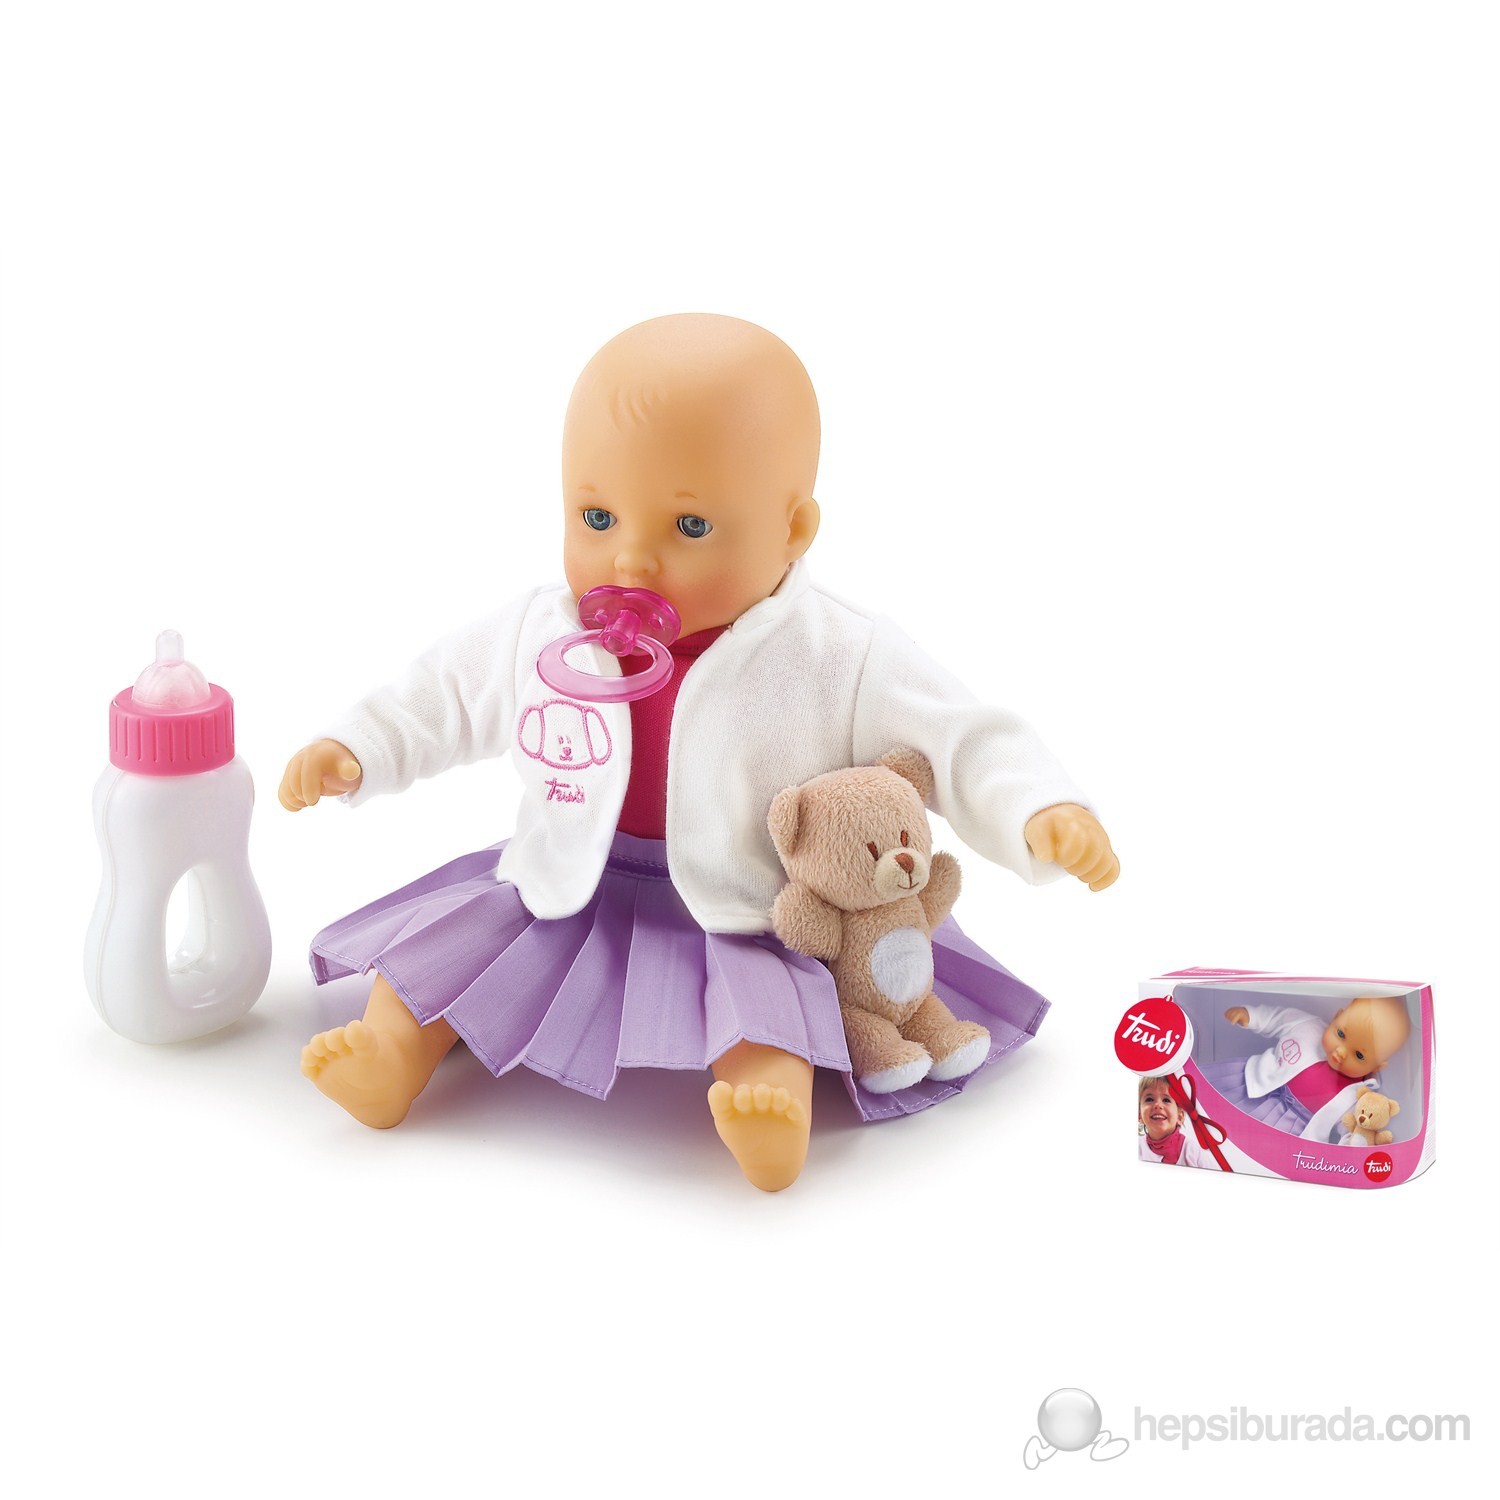 baby trudimia oyuncak bebek lila etekli 30 cm fiyati